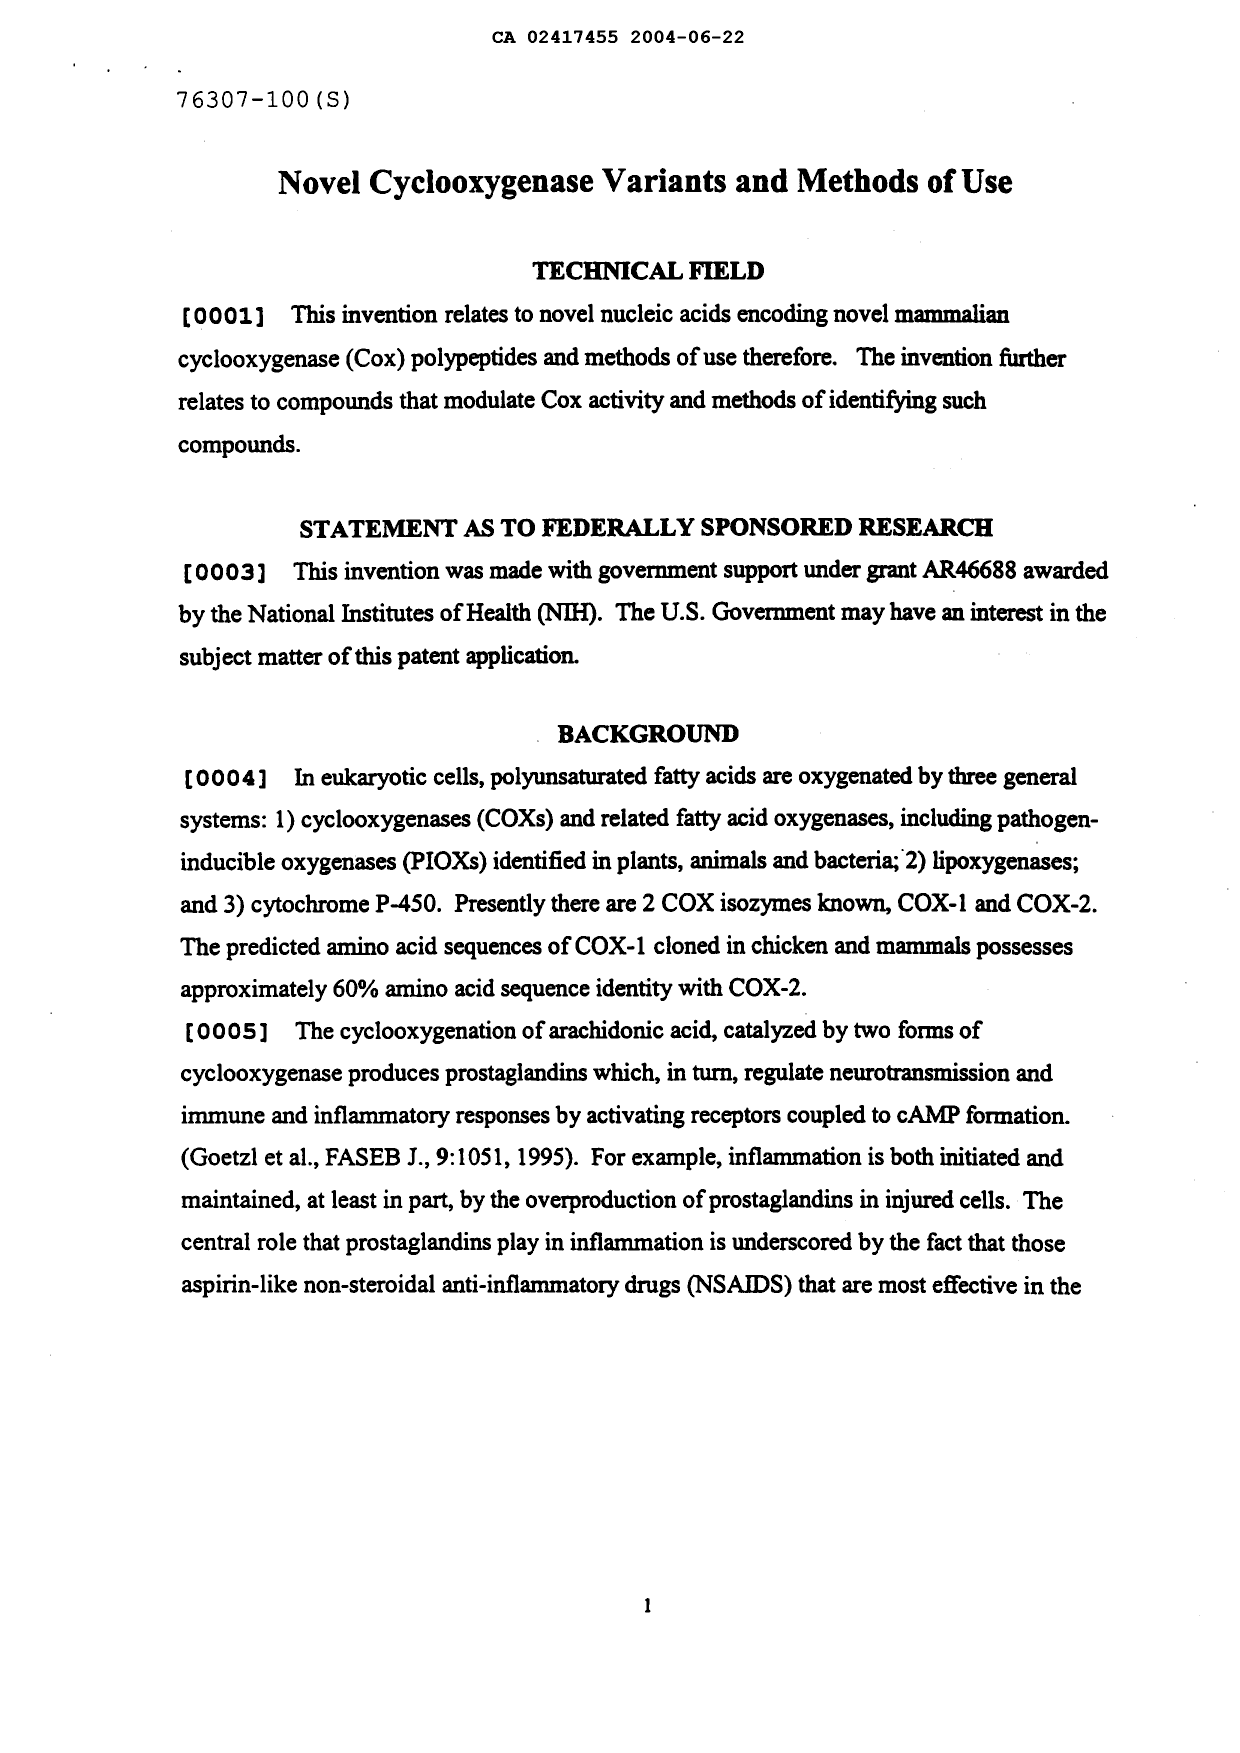 Canadian Patent Document 2417455. Description 20040622. Image 1 of 163